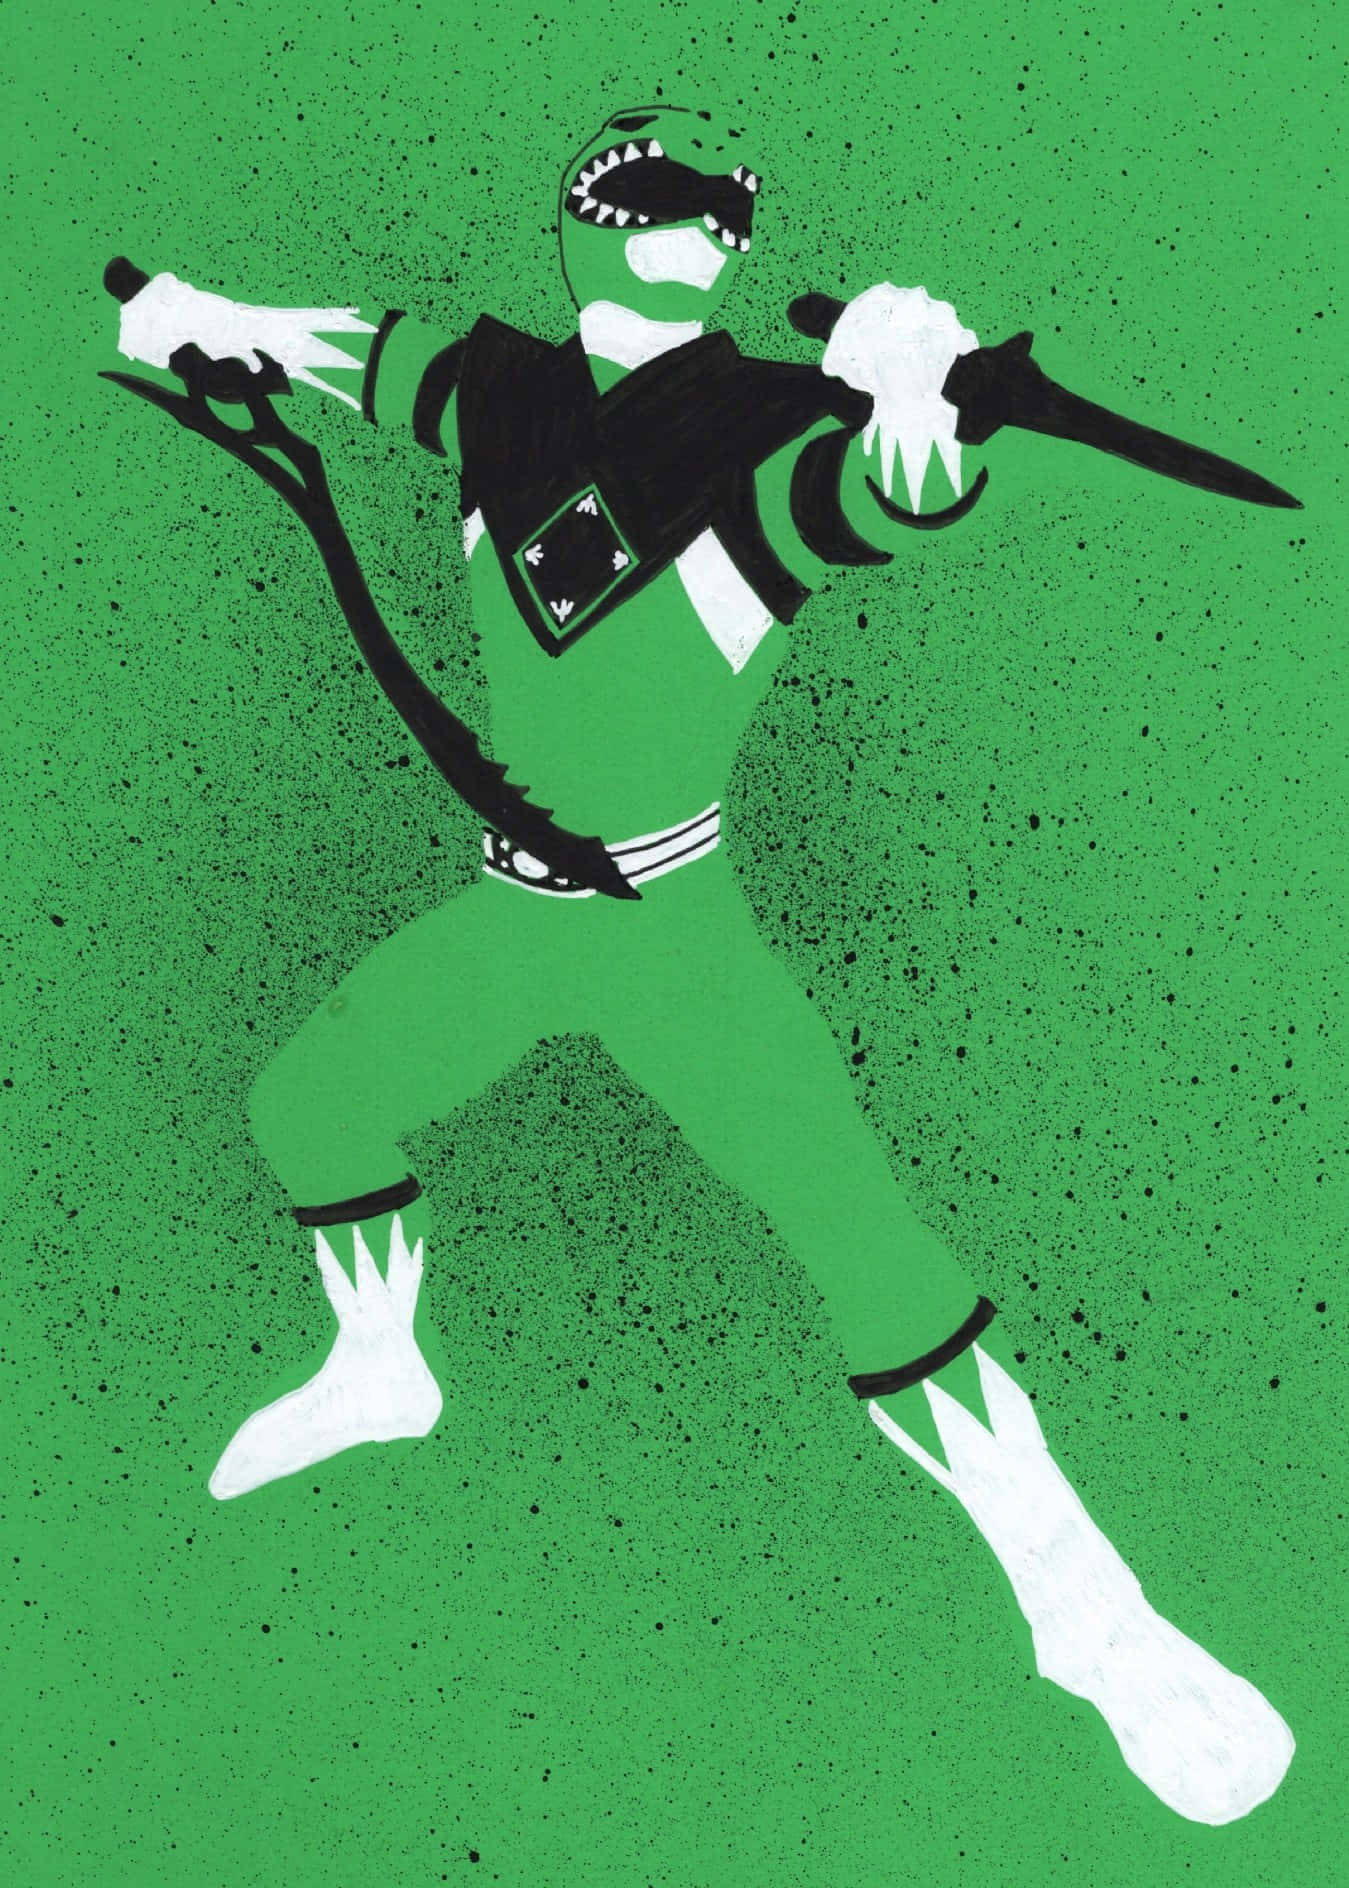 Green Ranger Stylized Artwork Wallpaper